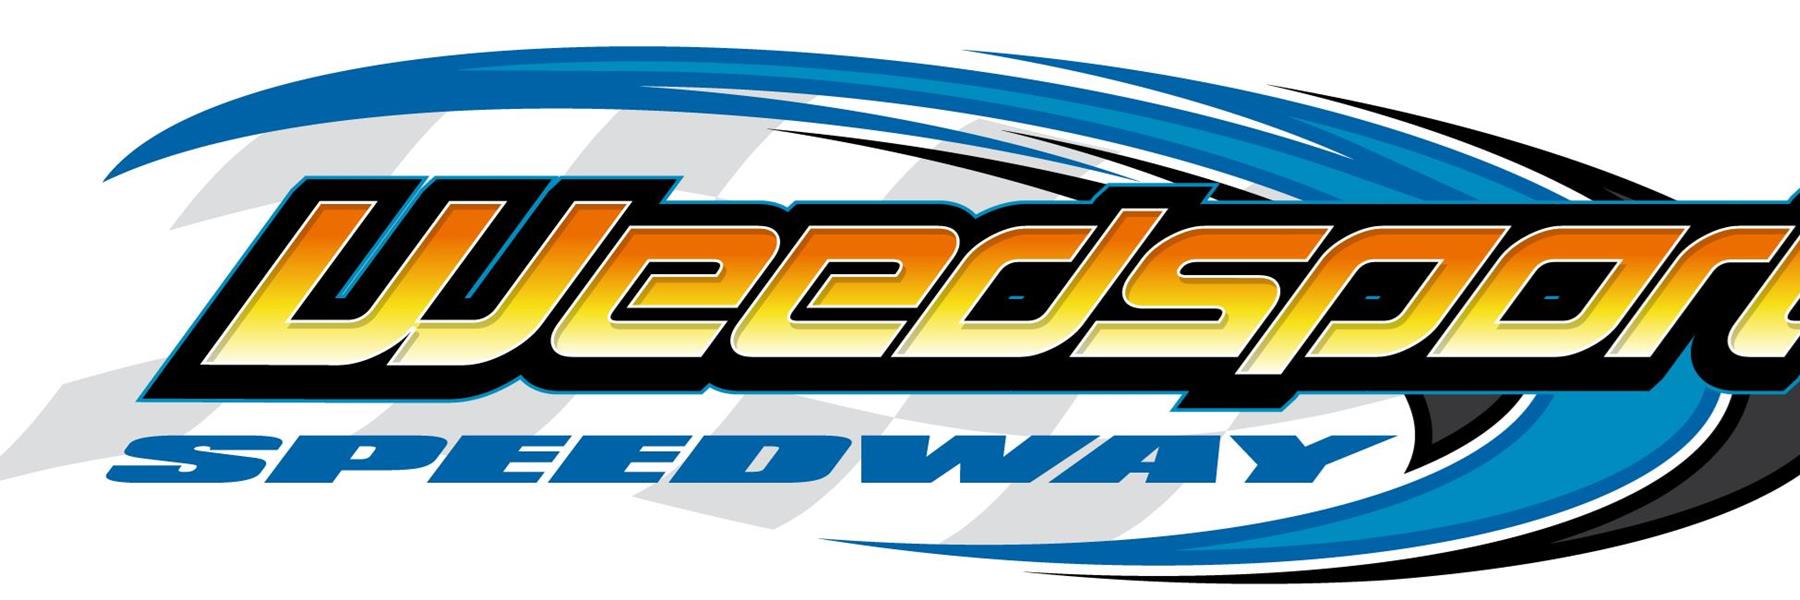 5/29/2022 - Weedsport Speedway 